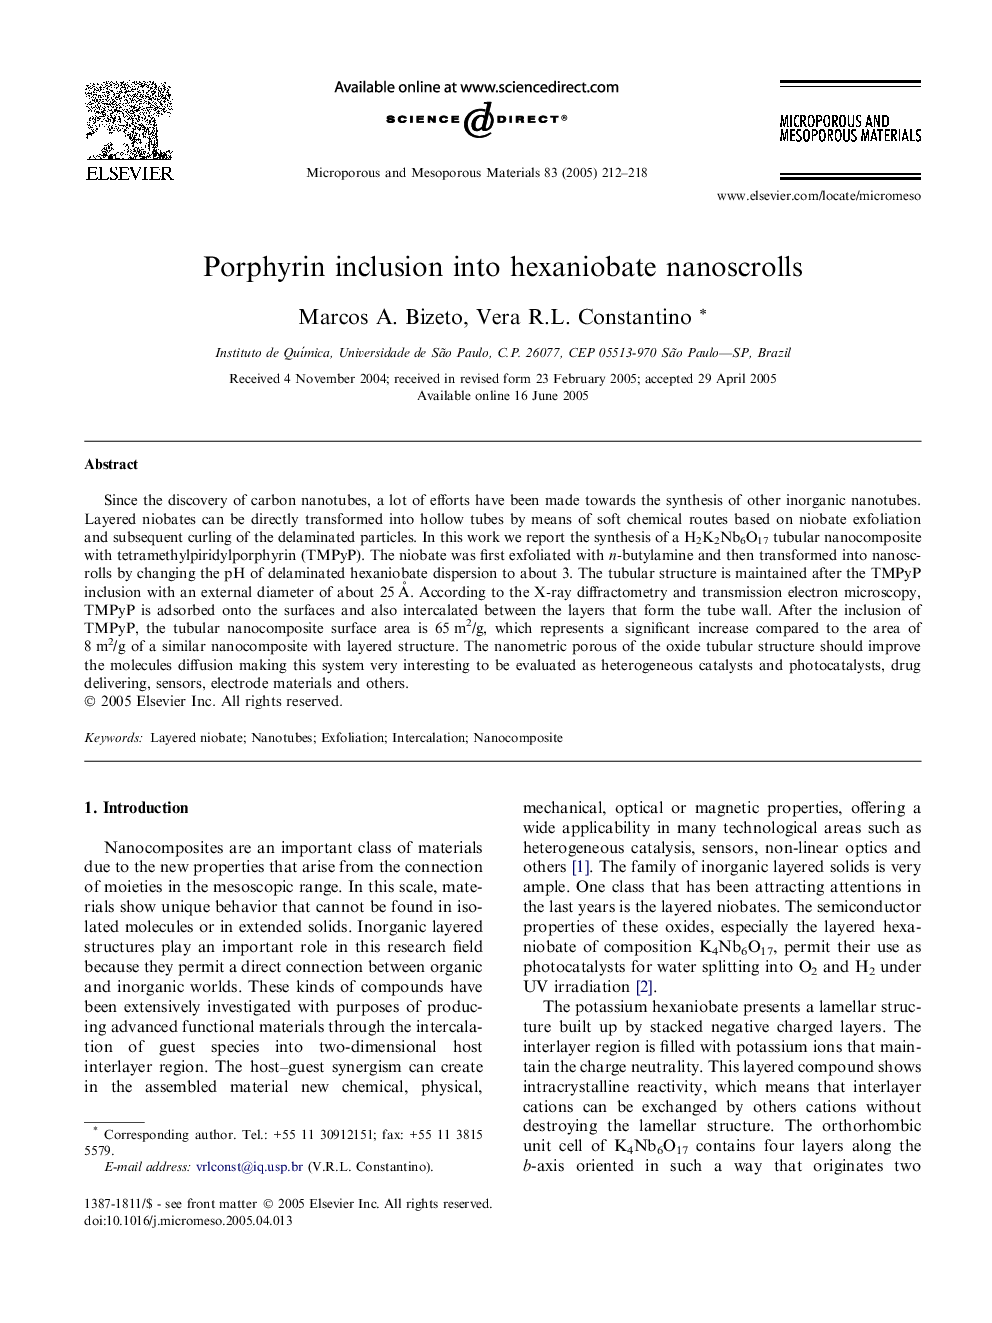 Porphyrin inclusion into hexaniobate nanoscrolls